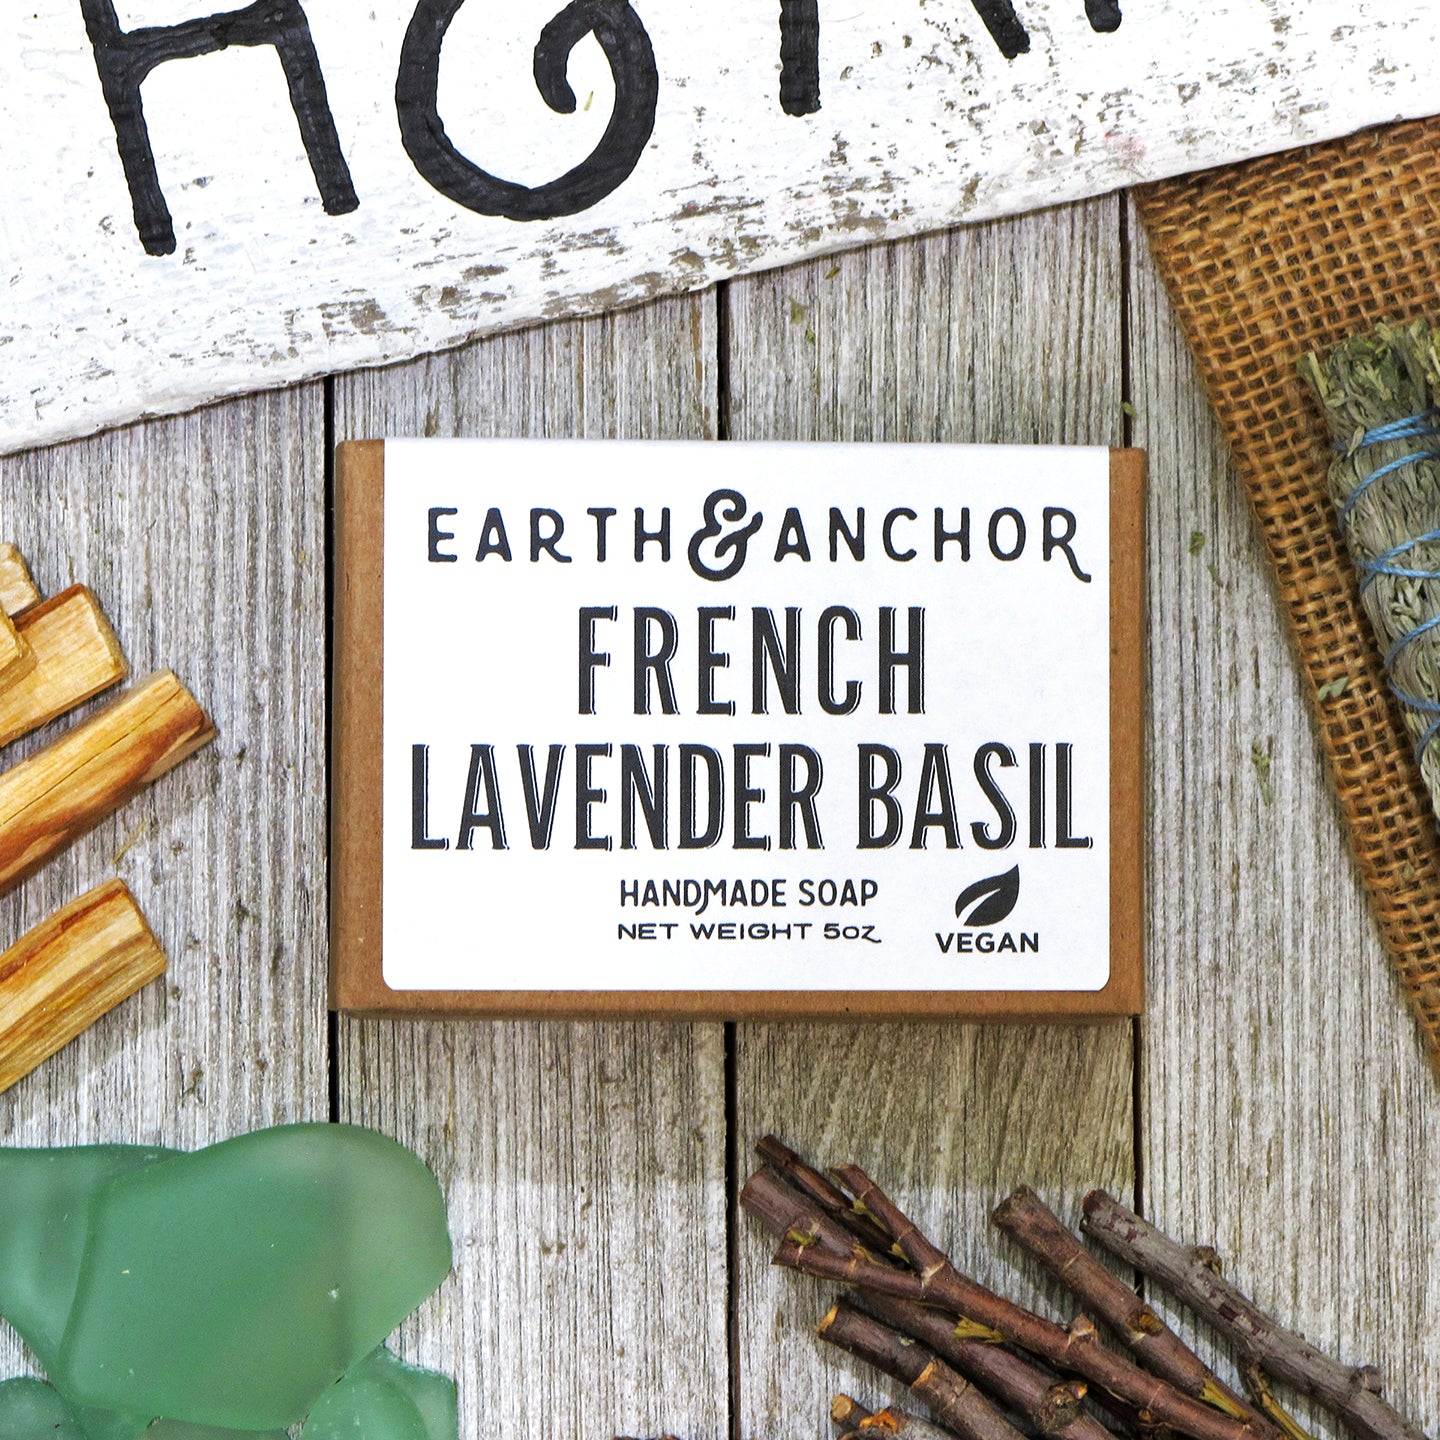 Frankincense + Myrrh Soap - Earth Soap Company